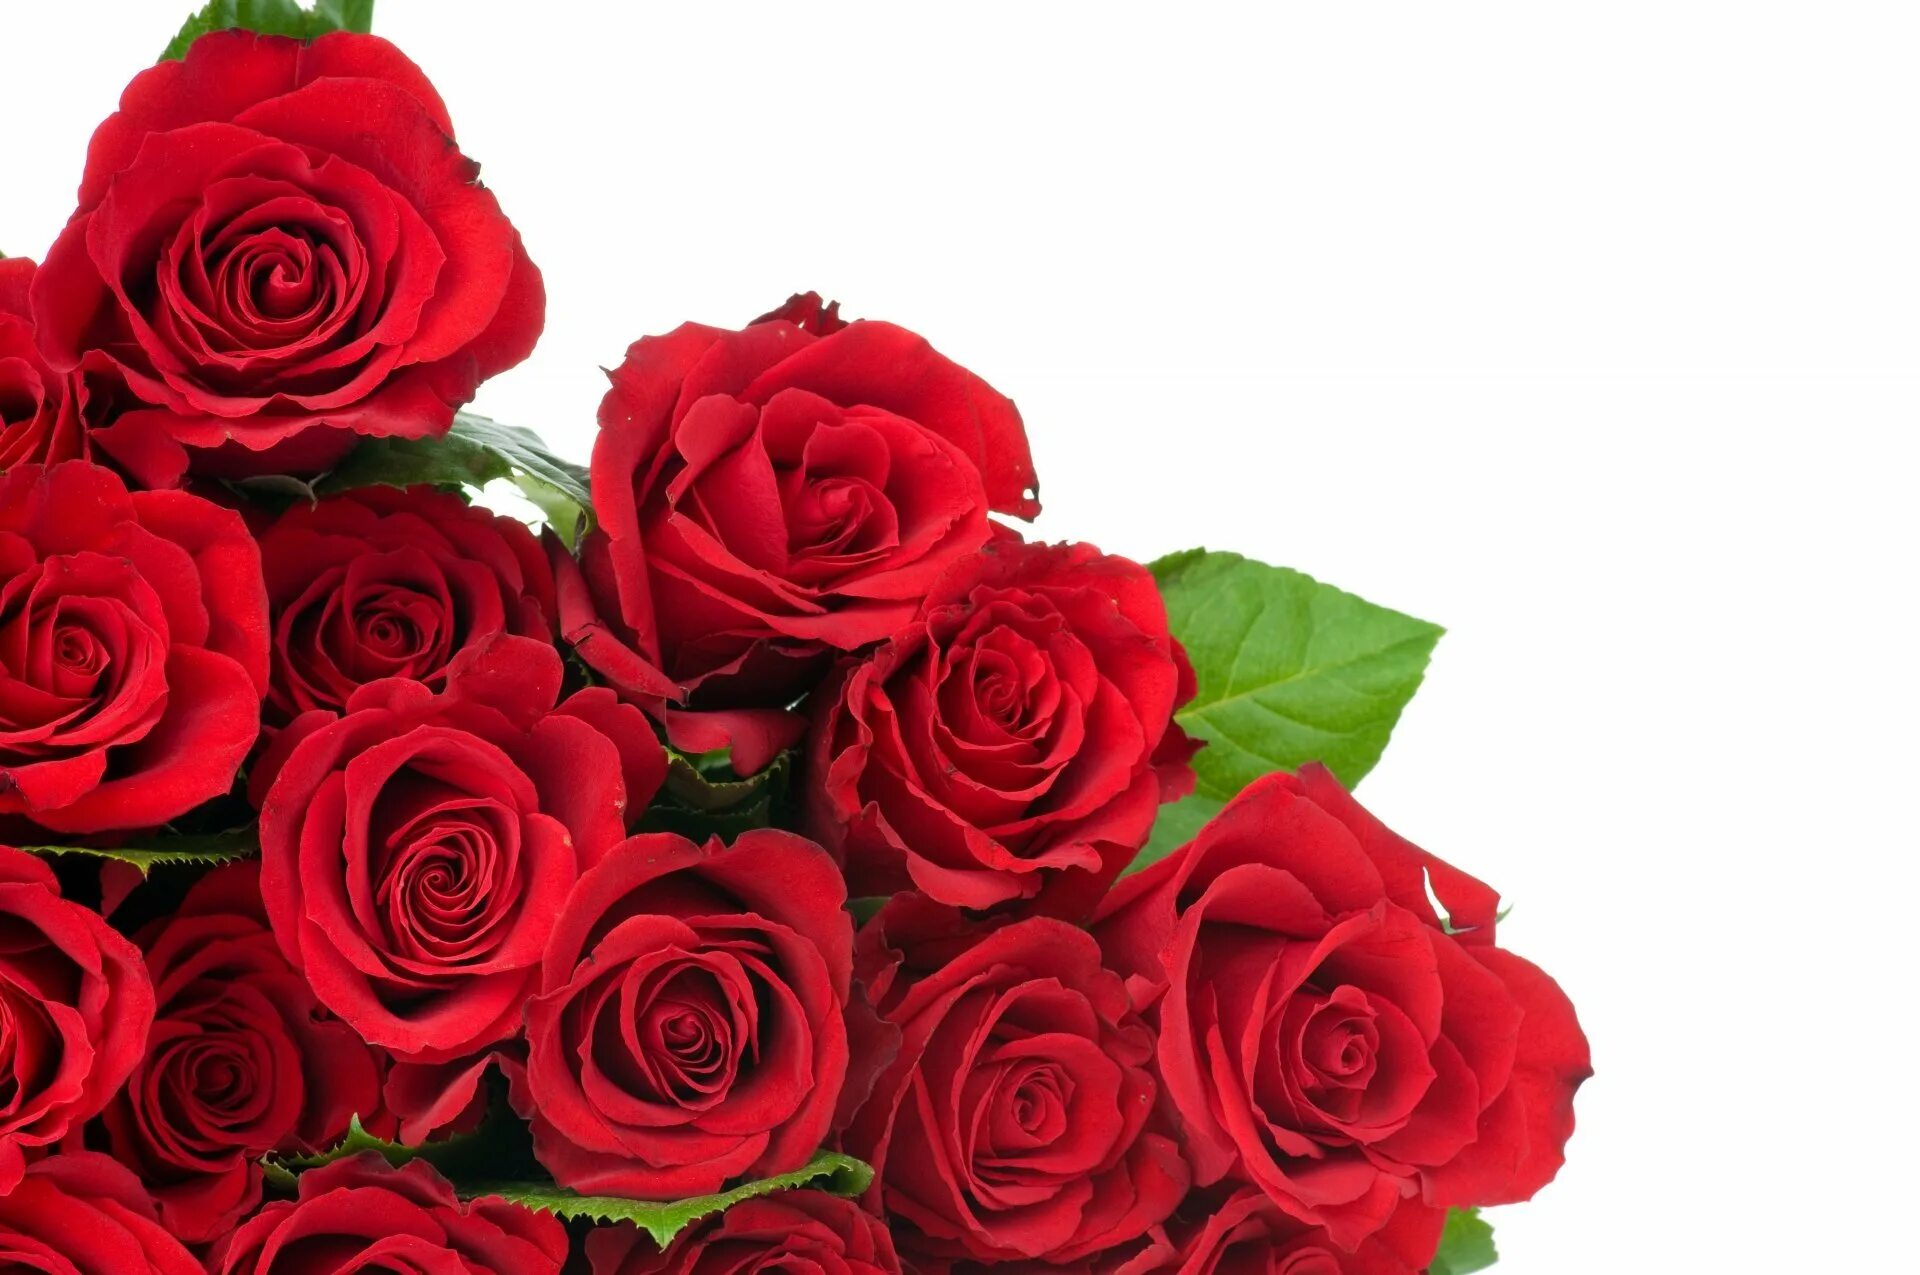 Красивый букет красных роз. Buket krasnix roz. Букет роз на прозрачном фоне. Розы снизу